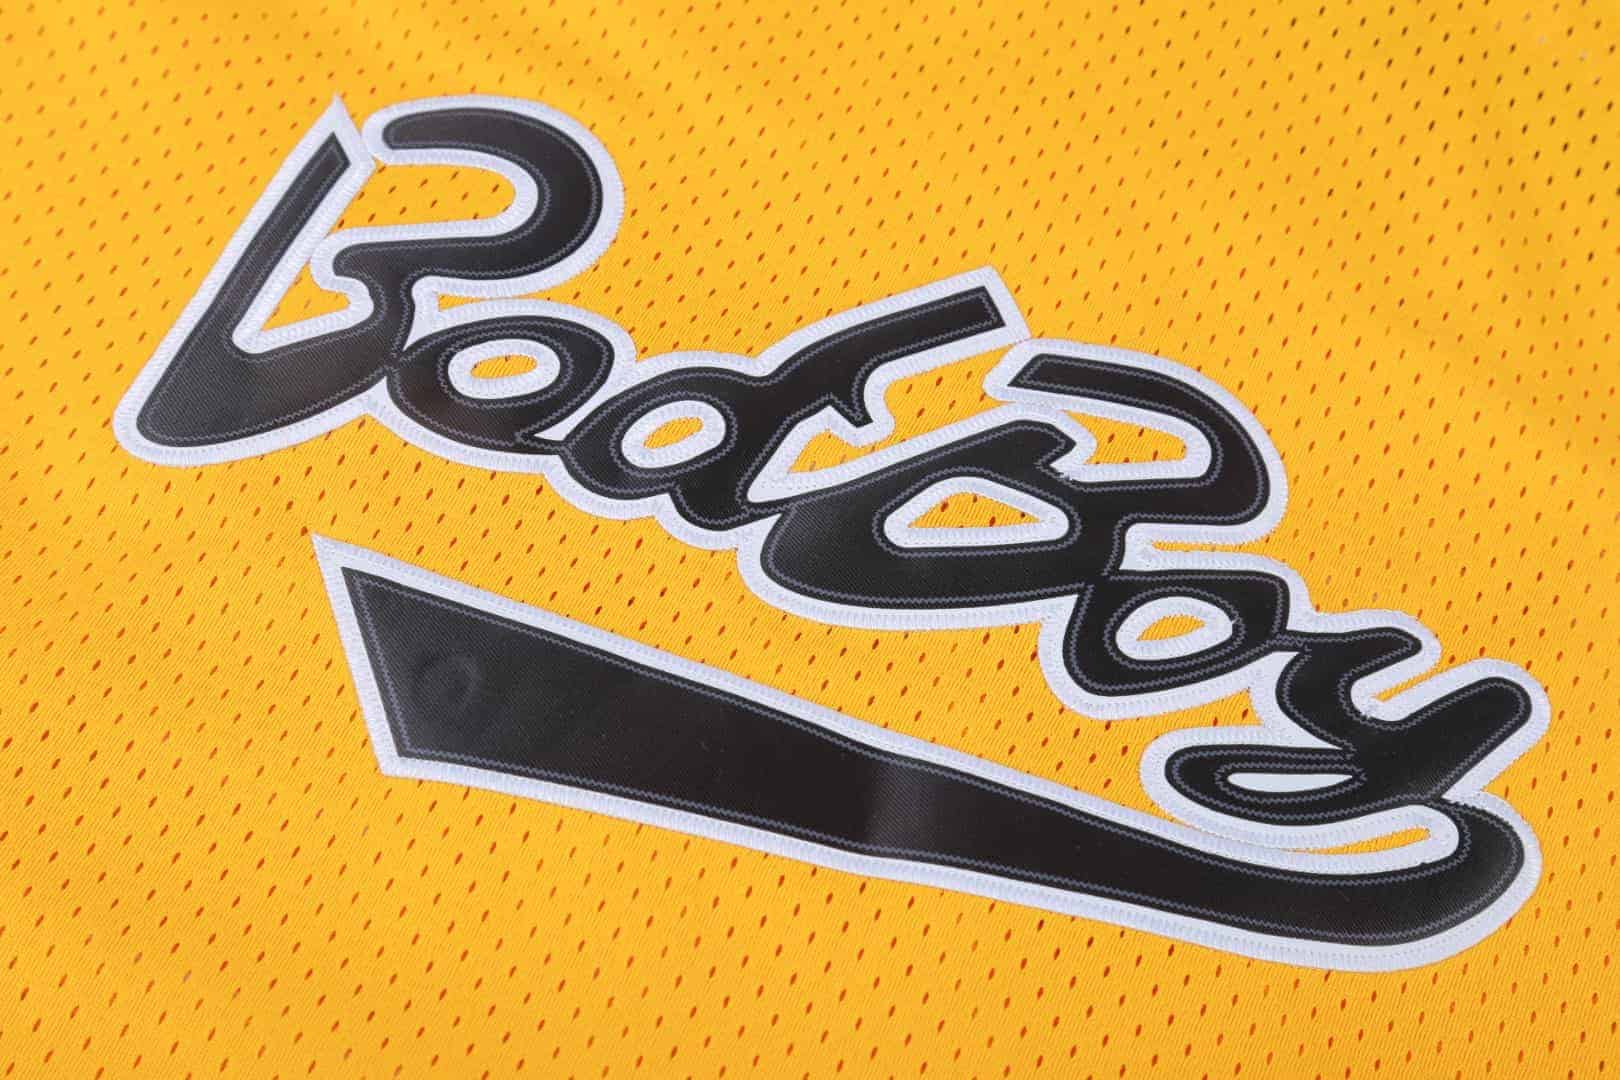 Biggie Logo - BadBoy 72 Smalls Notorious Biggie jersey - AFLGO